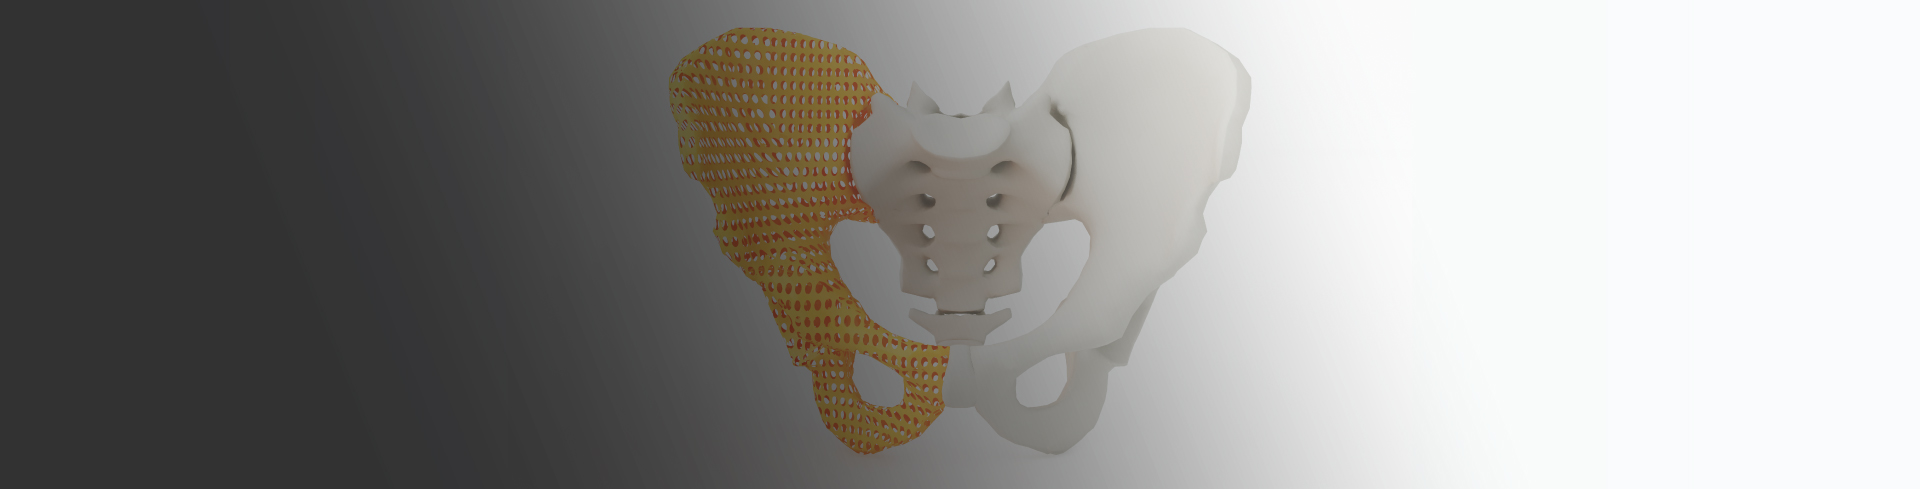 Impresión y bioimpresión 3D en salud